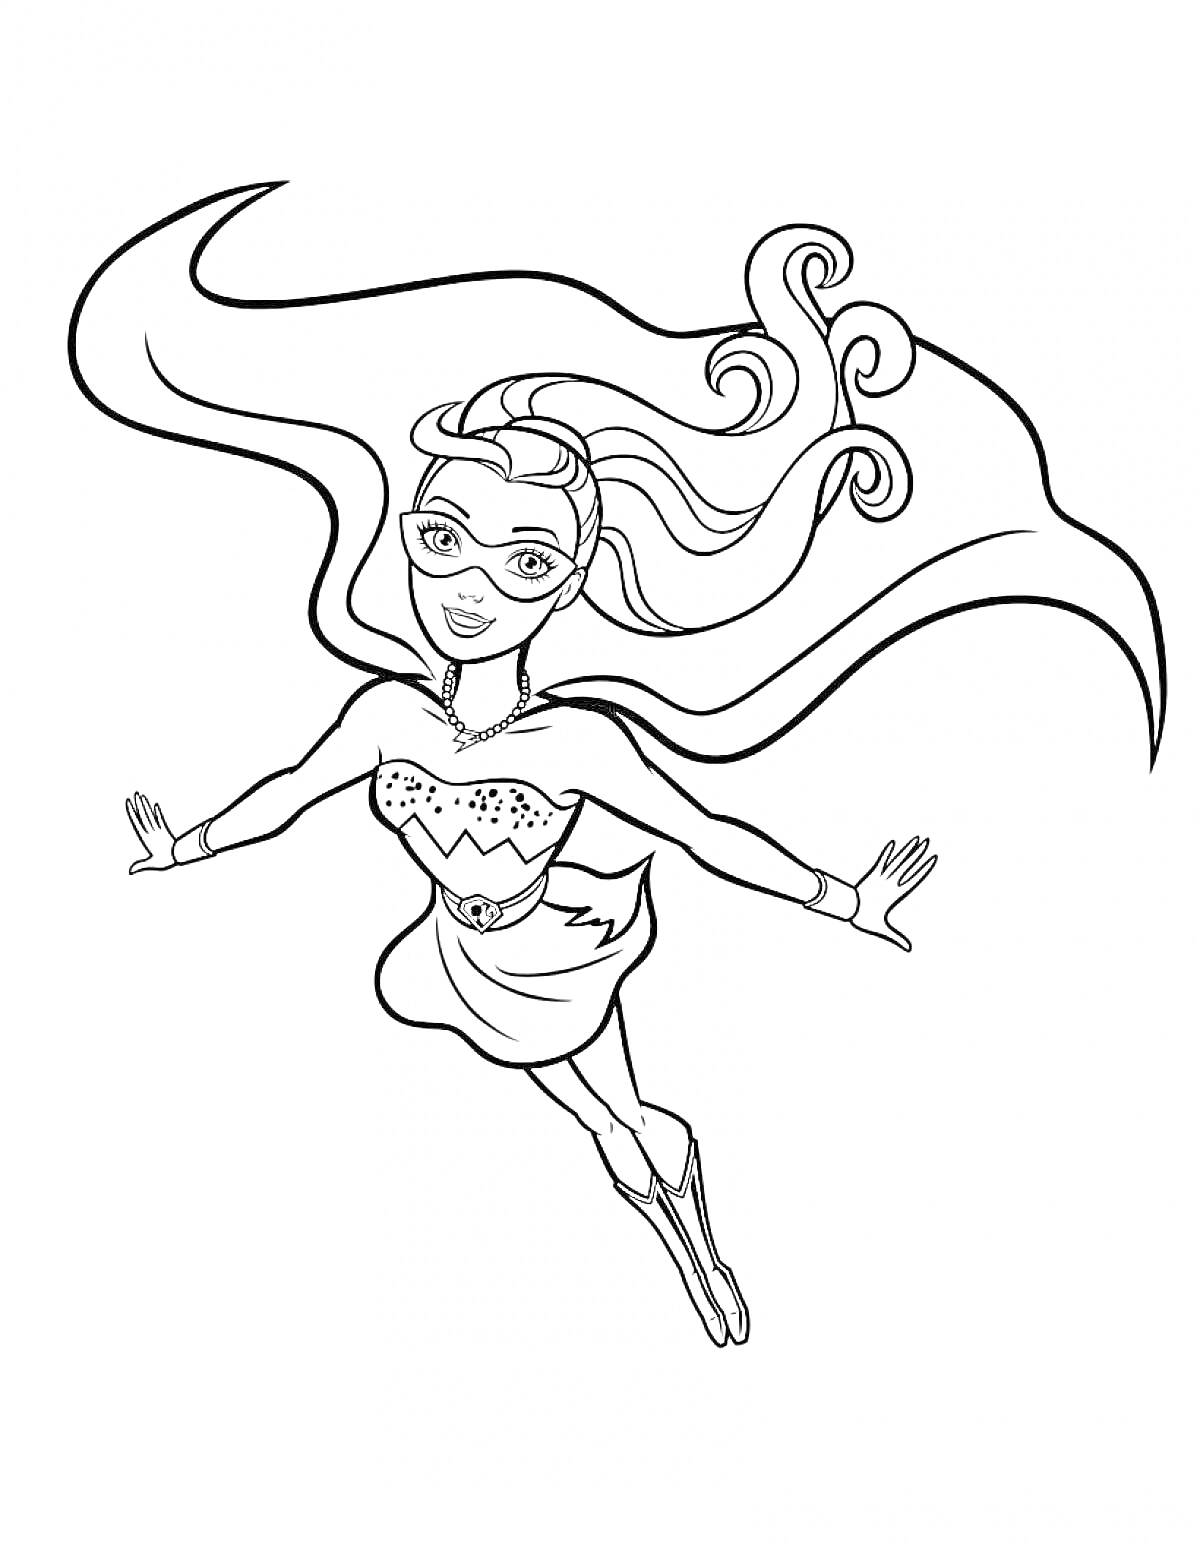 Барби Супер Принцесса летящая в костюме с длинным плащом и маской